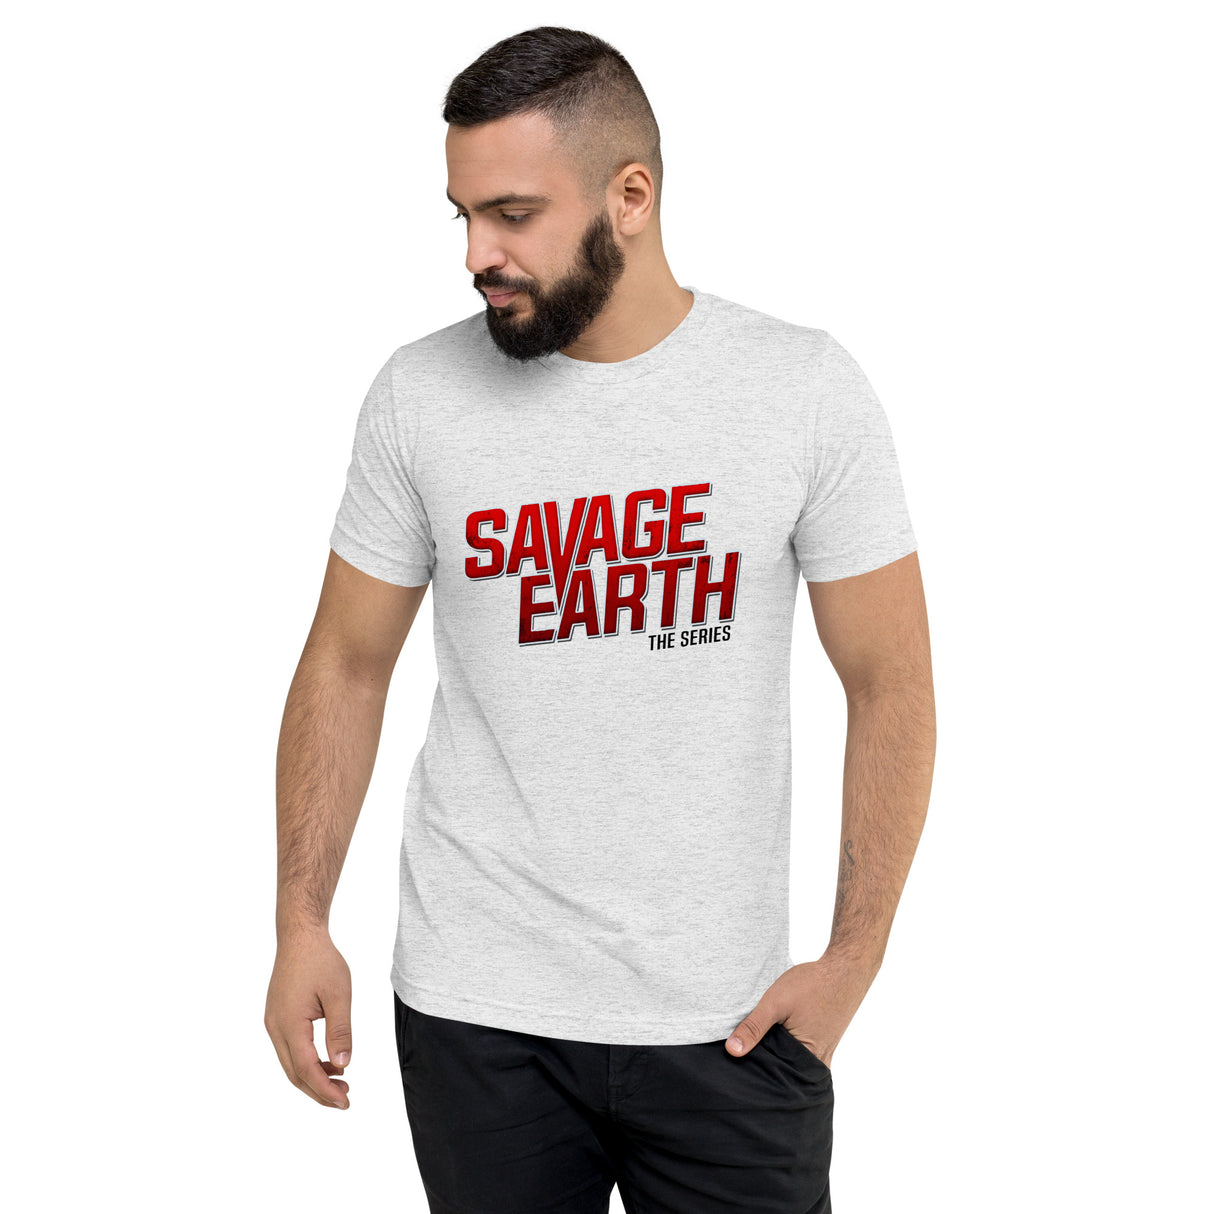 Savage Earth White Tee